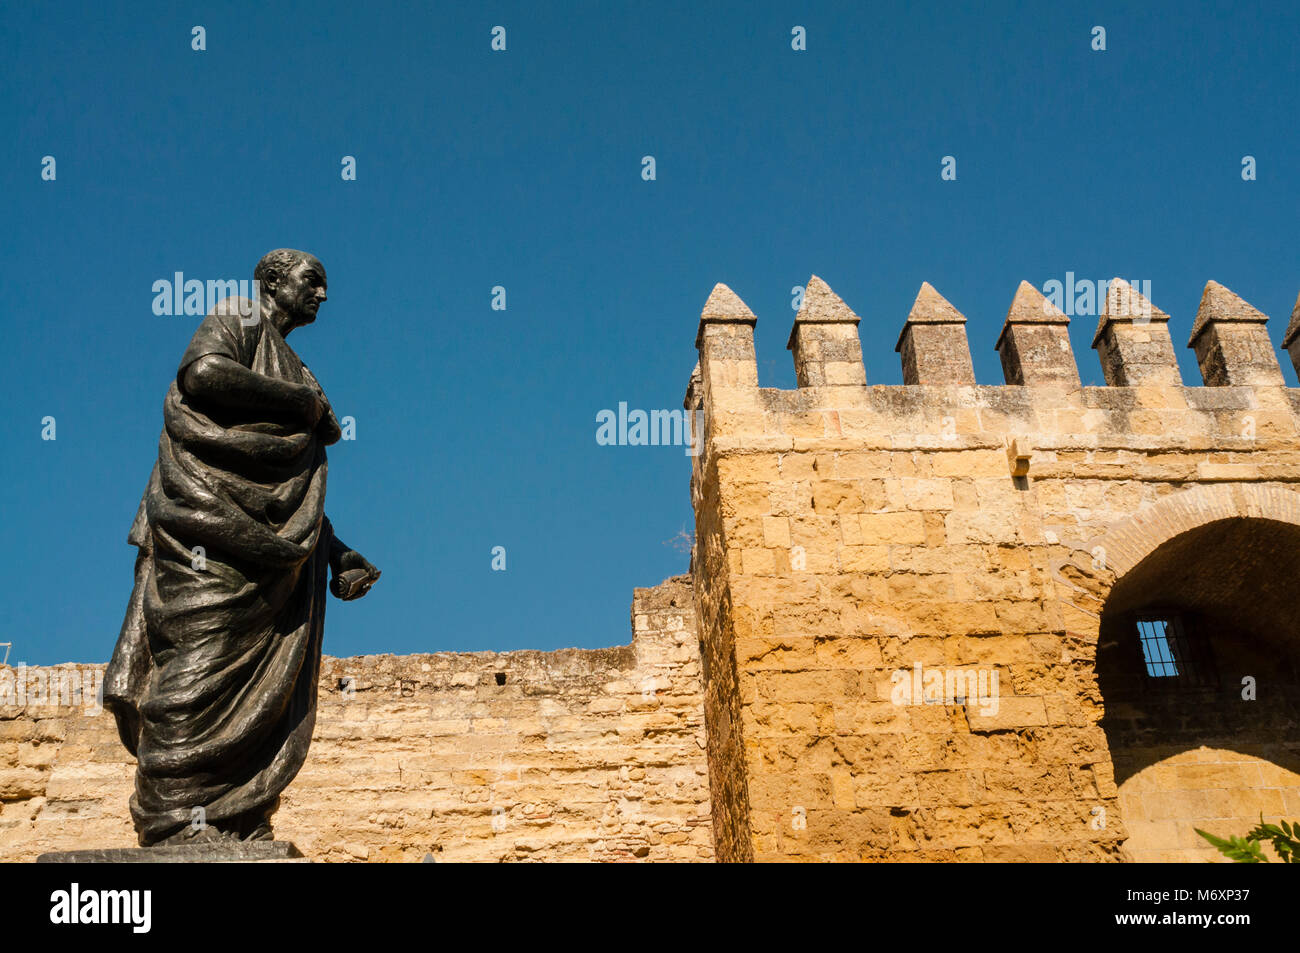 Statue of the Roman philosopher Seneca, Estatua del filósofo romano Séneca, Almodóvar gate, Puerta de Almodóvar, Córdoba, Andalucia, Spain Stock Photo